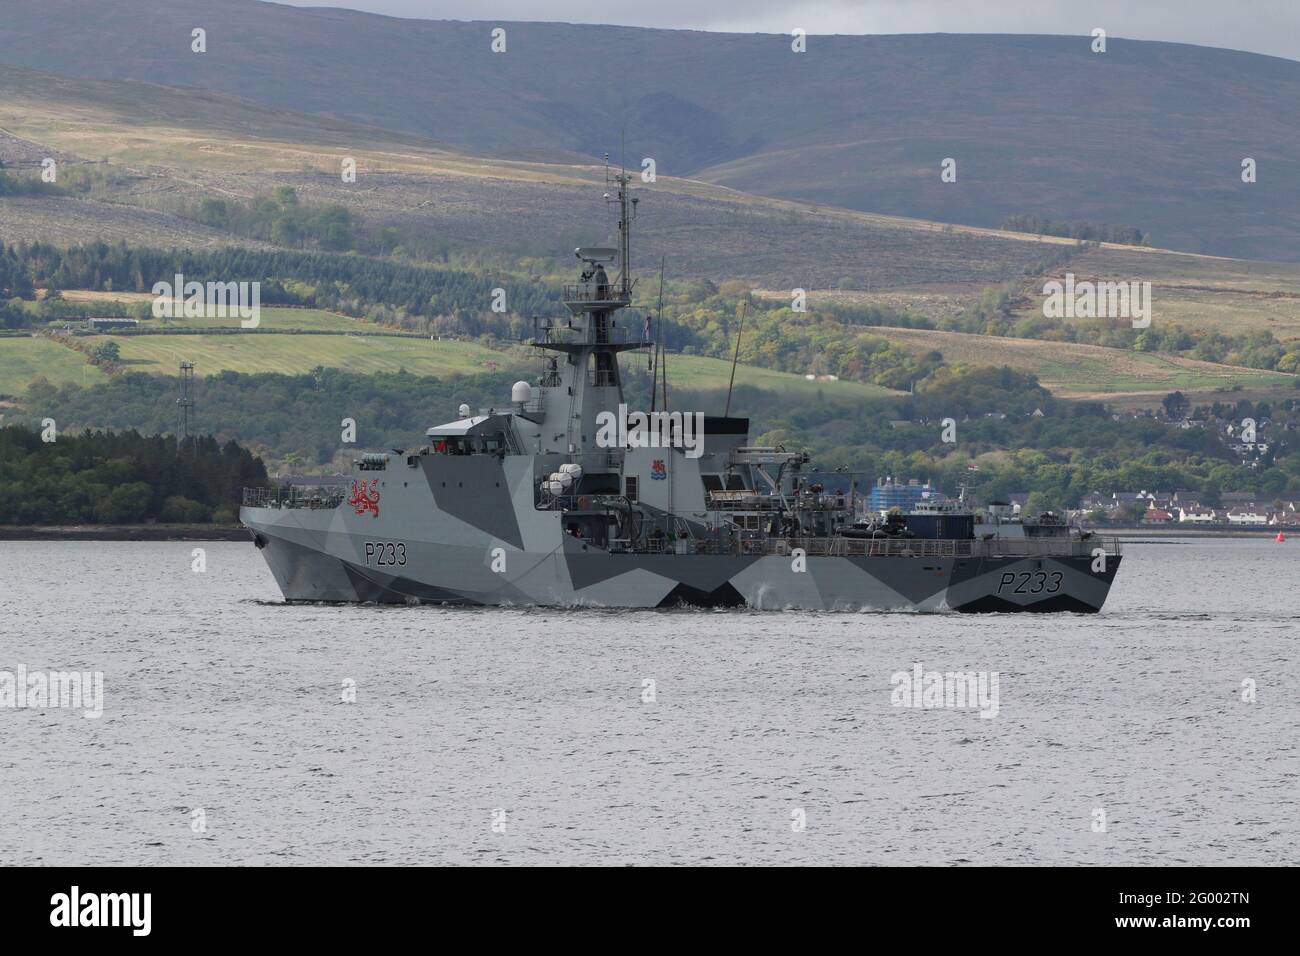 HMS Tamar (P233), un navire de patrouille de la classe du Lot 2 exploité par la Marine royale, dans son schéma de camouflage éblouissant récemment appliqué, au large de Greenock sur le Firth de Clyde. Banque D'Images